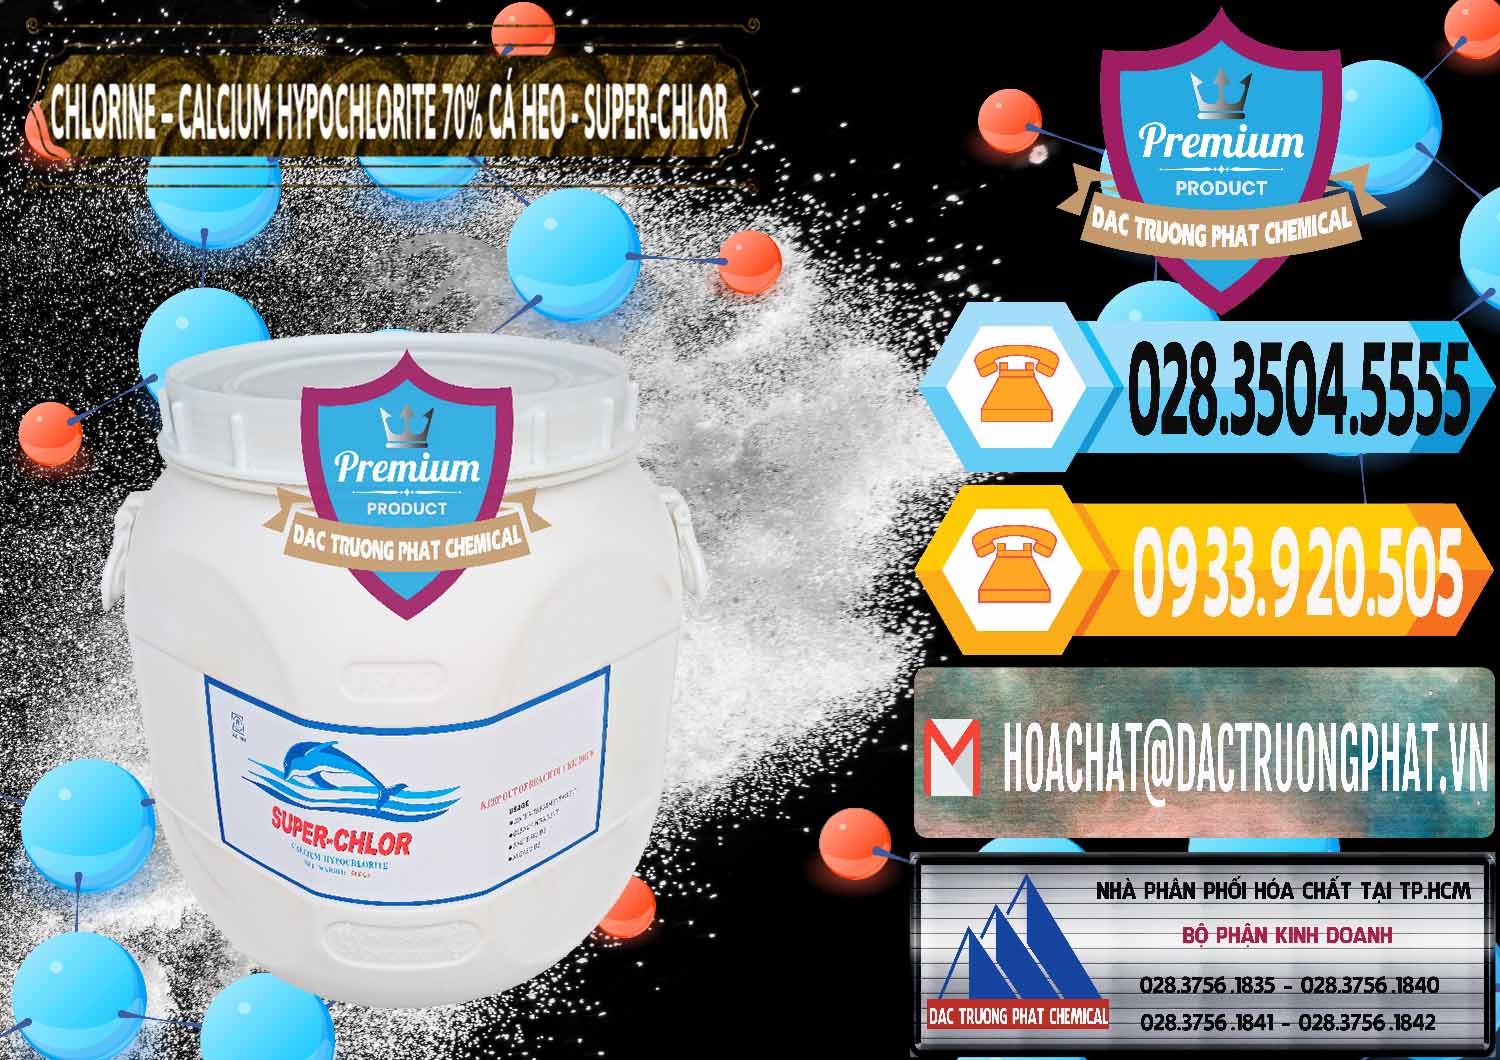 Cty chuyên bán _ cung cấp Clorin - Chlorine Cá Heo 70% Super Chlor Trung Quốc China - 0058 - Công ty chuyên bán ( cung cấp ) hóa chất tại TP.HCM - hoachattayrua.net